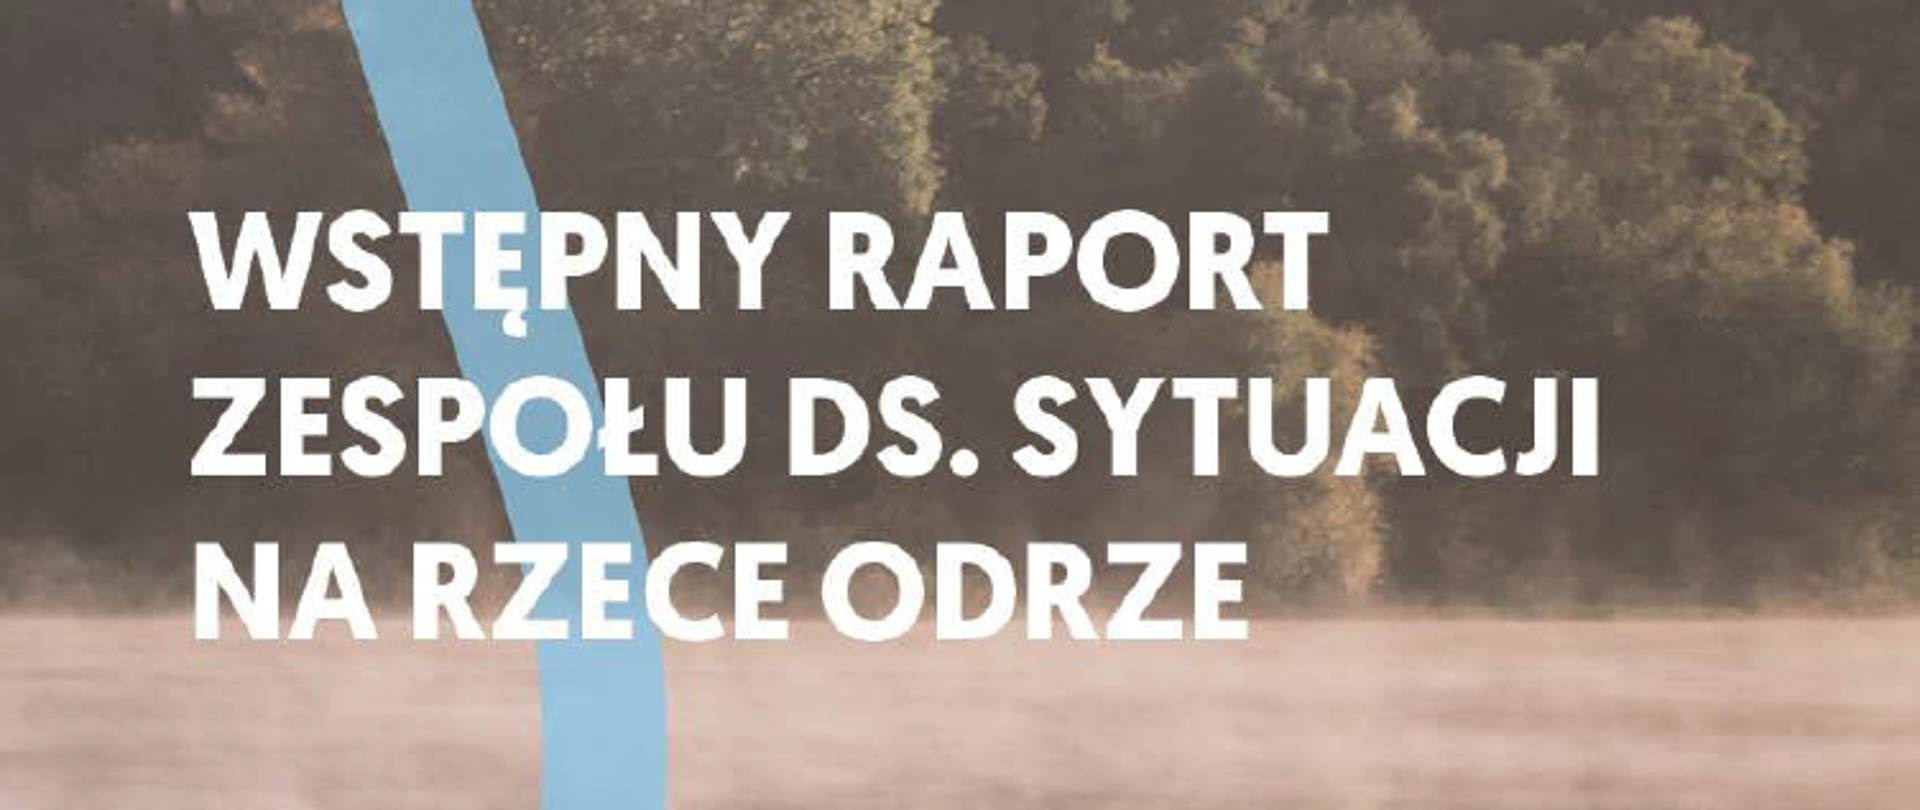 Wstępny raport zespołu ds. sytuacji na rzece Odrze